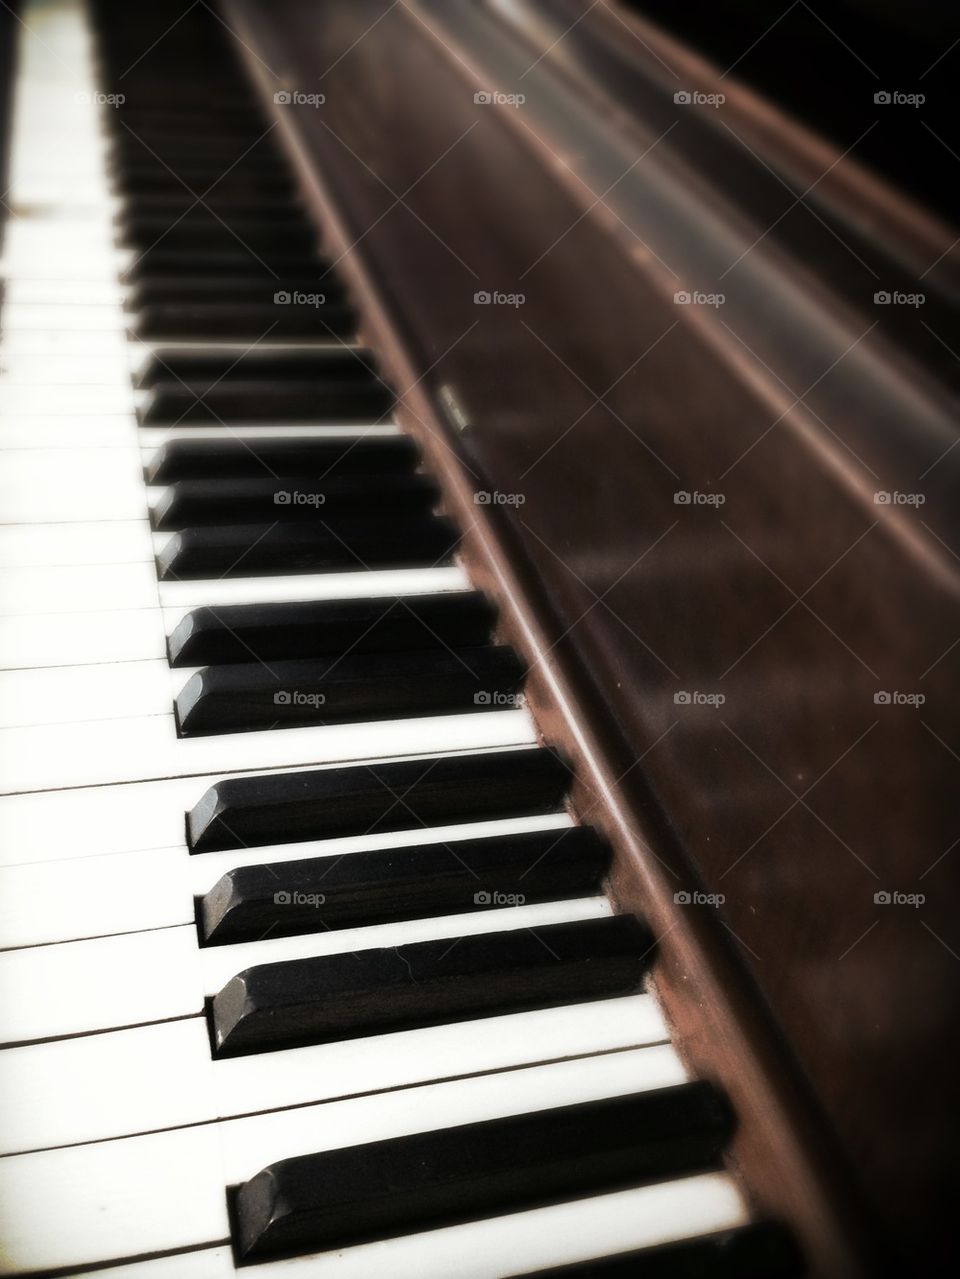 Musical keys